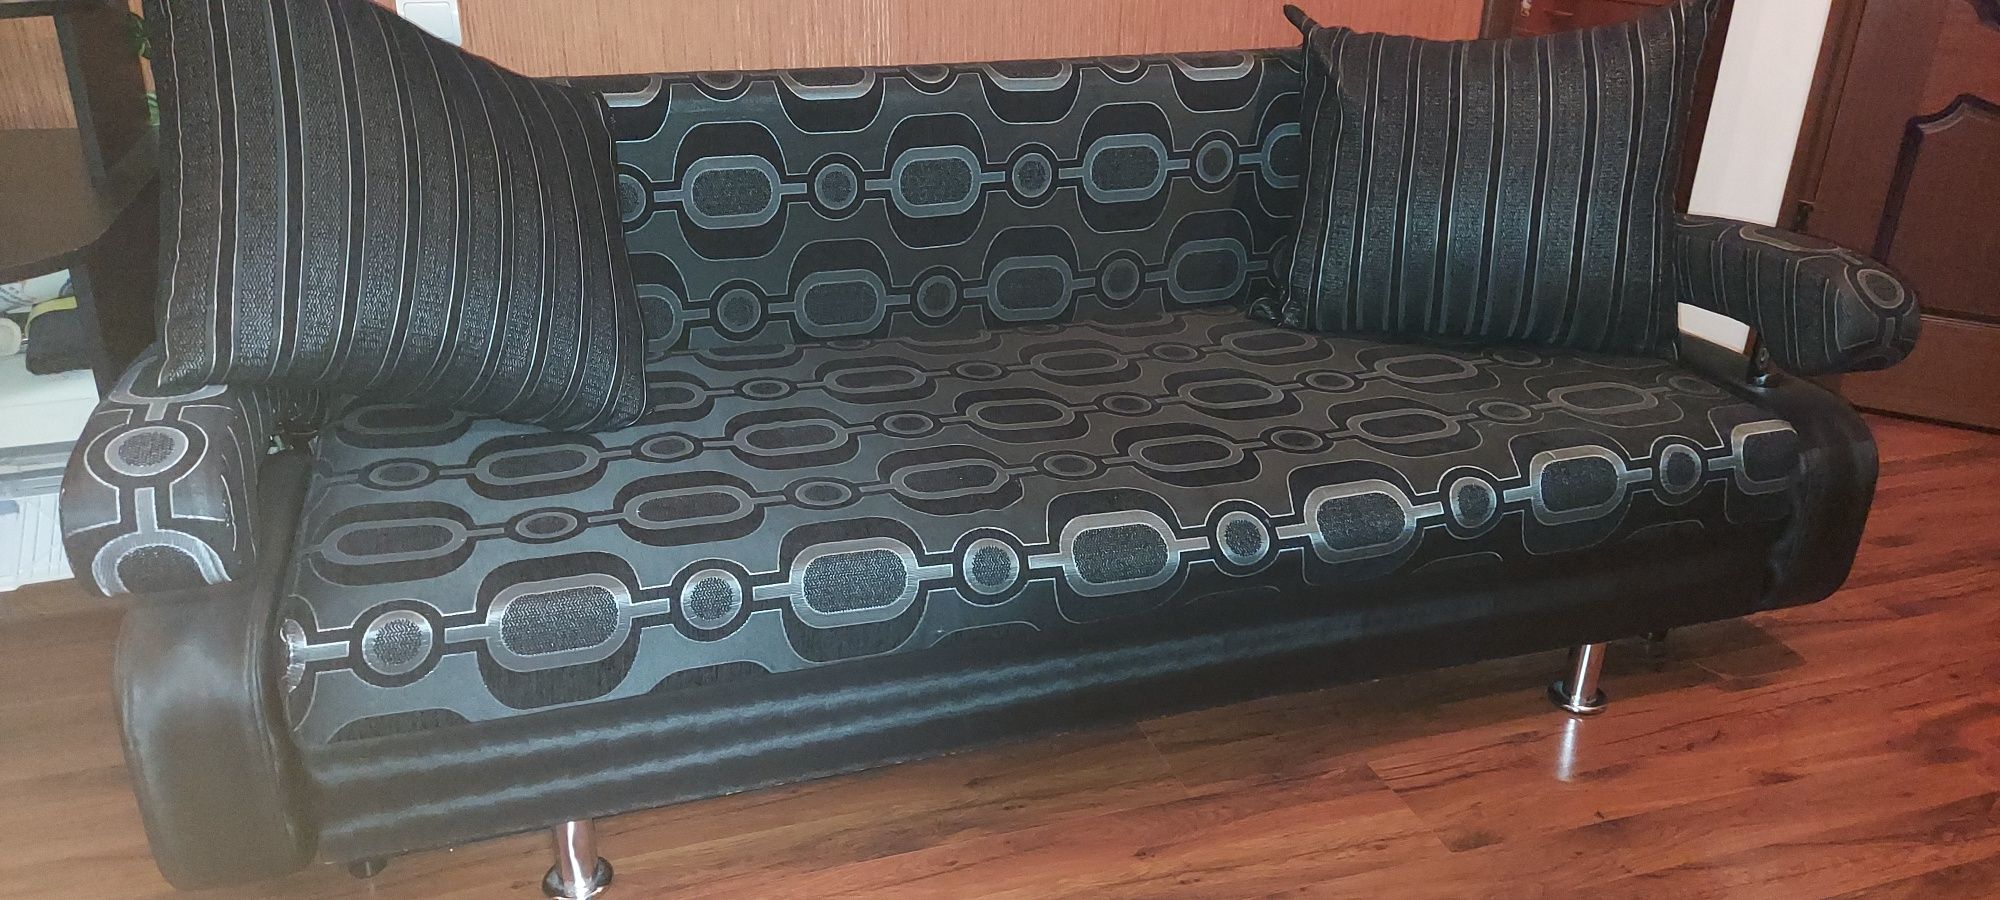 Продам диван раскладной в отличном состоянии